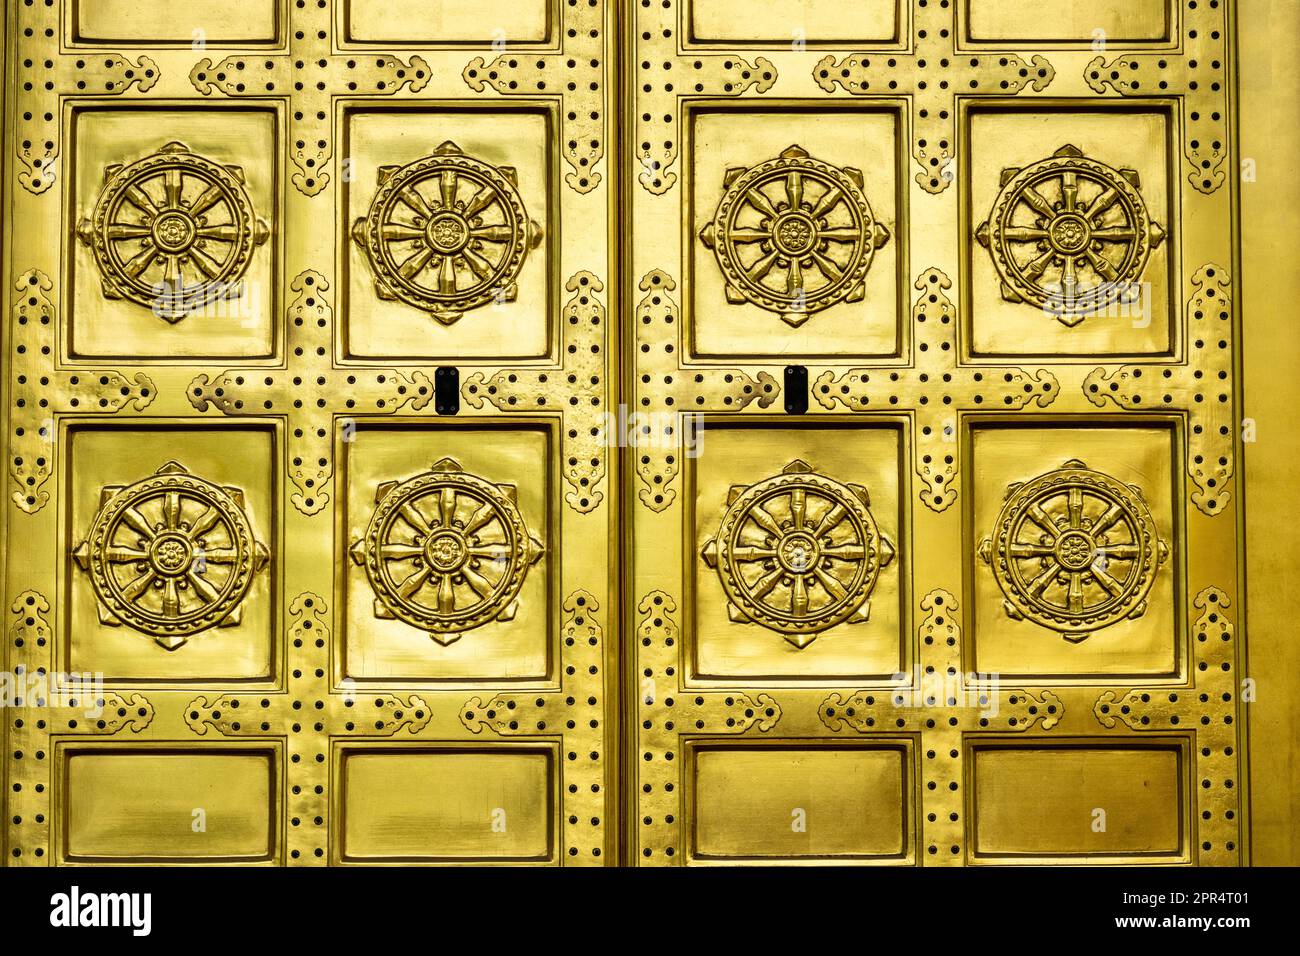 La porte dorée ornée de Karamon au sanctuaire Ueno Tosho-gu dans le parc Ueno, Tokyo, Japon. Le sanctuaire a été construit en 1627 et est considéré comme un grand exemple de l'architecture de Shinto de la période Edo. Banque D'Images